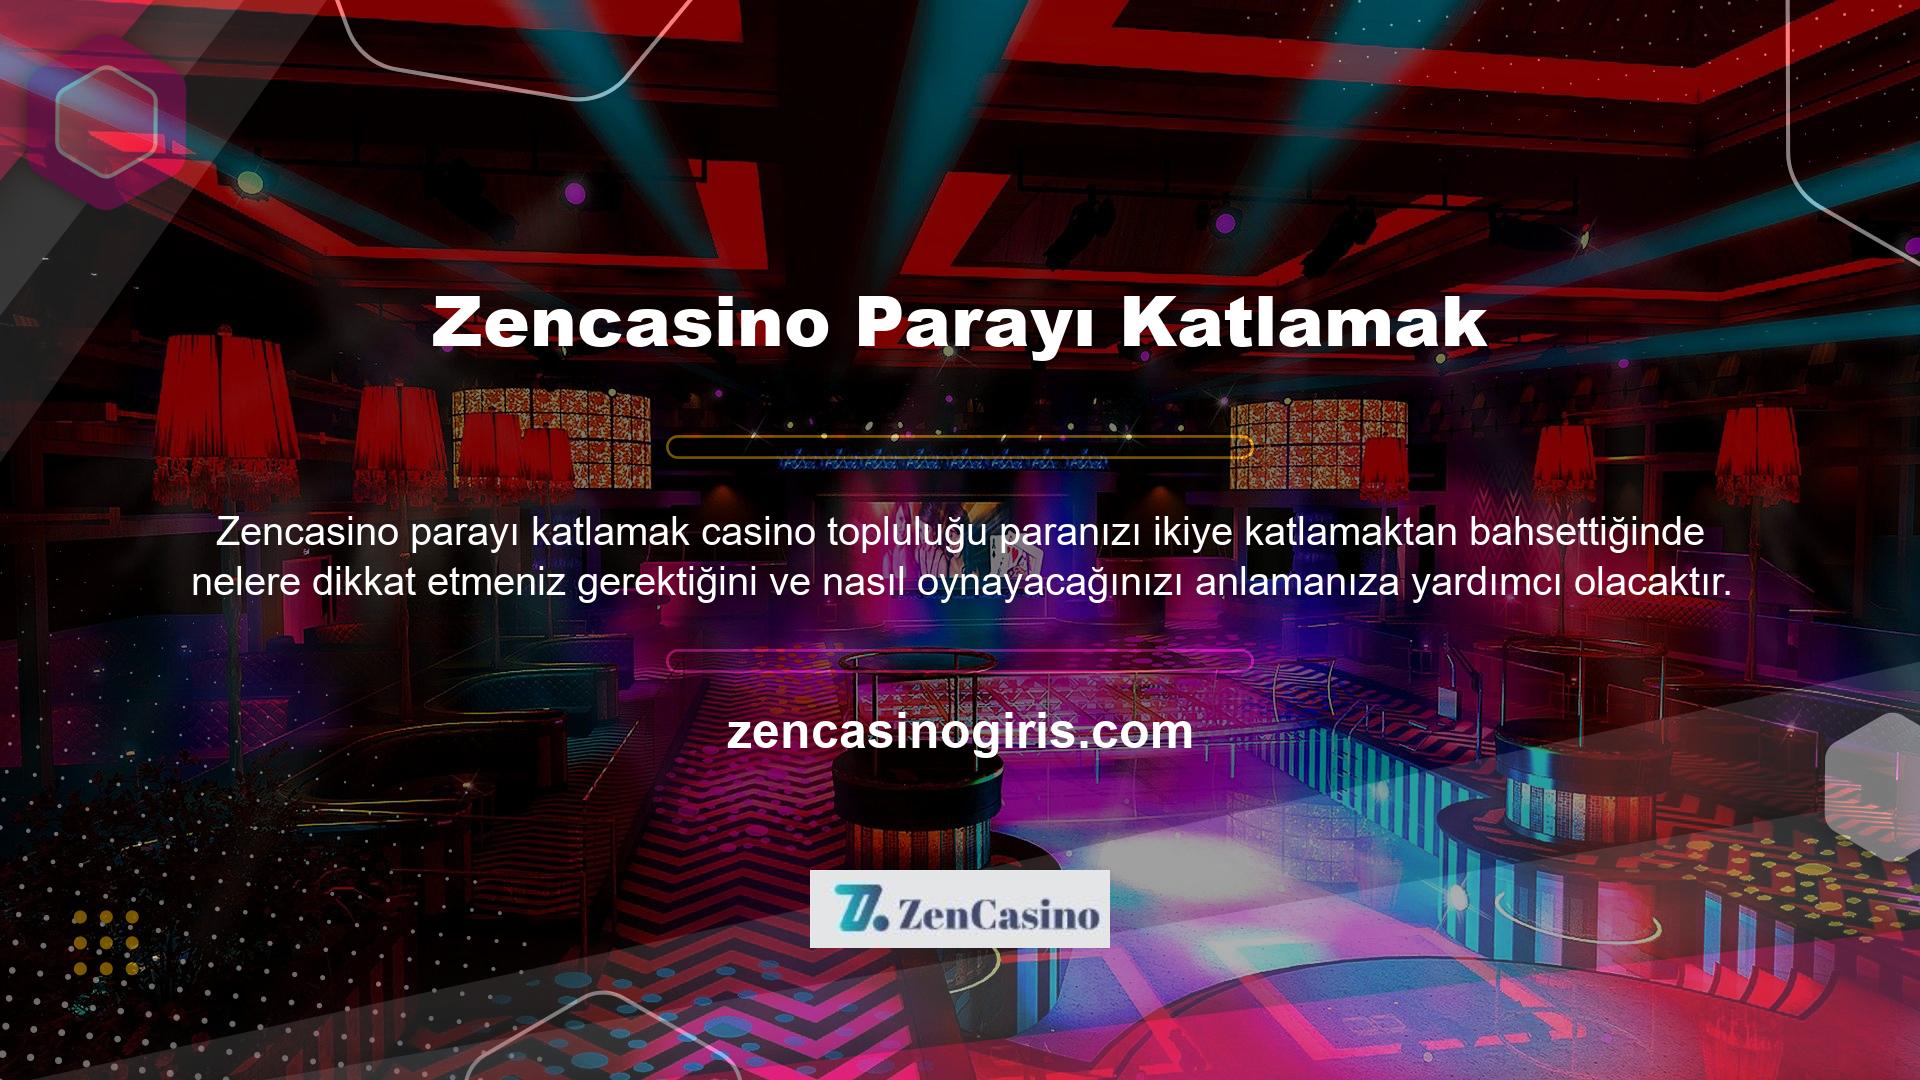 Bir oyun platformu olarak Zencasino, çeşitli oyun yolları sunar